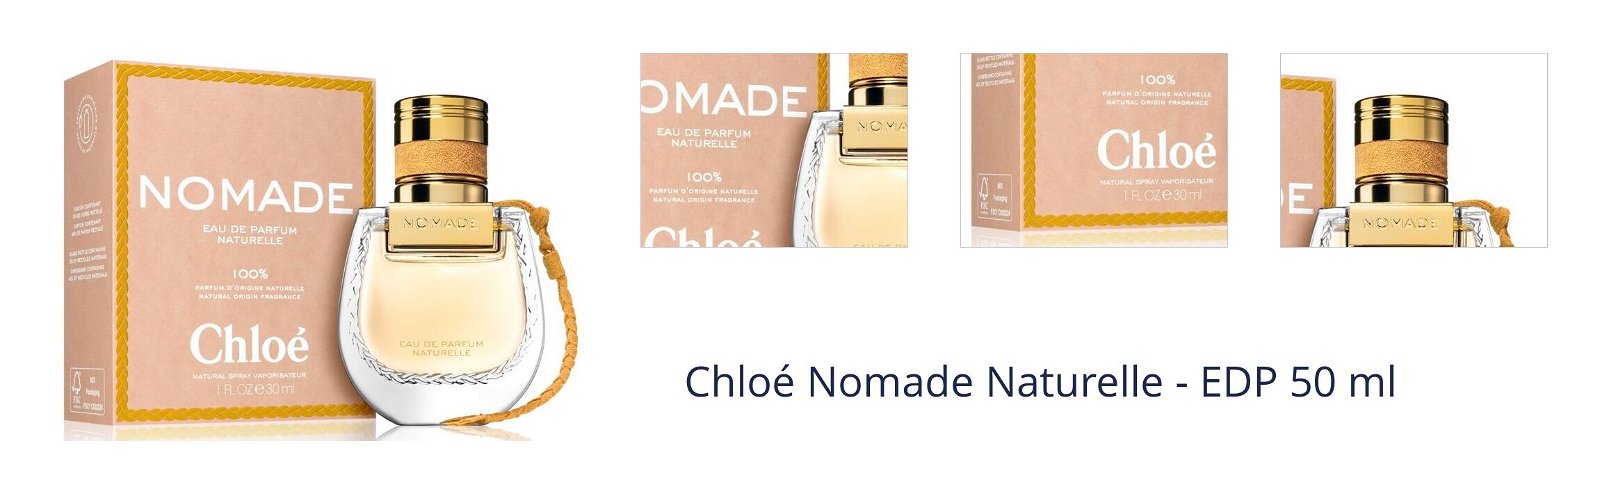 Chloé Nomade Naturelle - EDP 50 ml 7